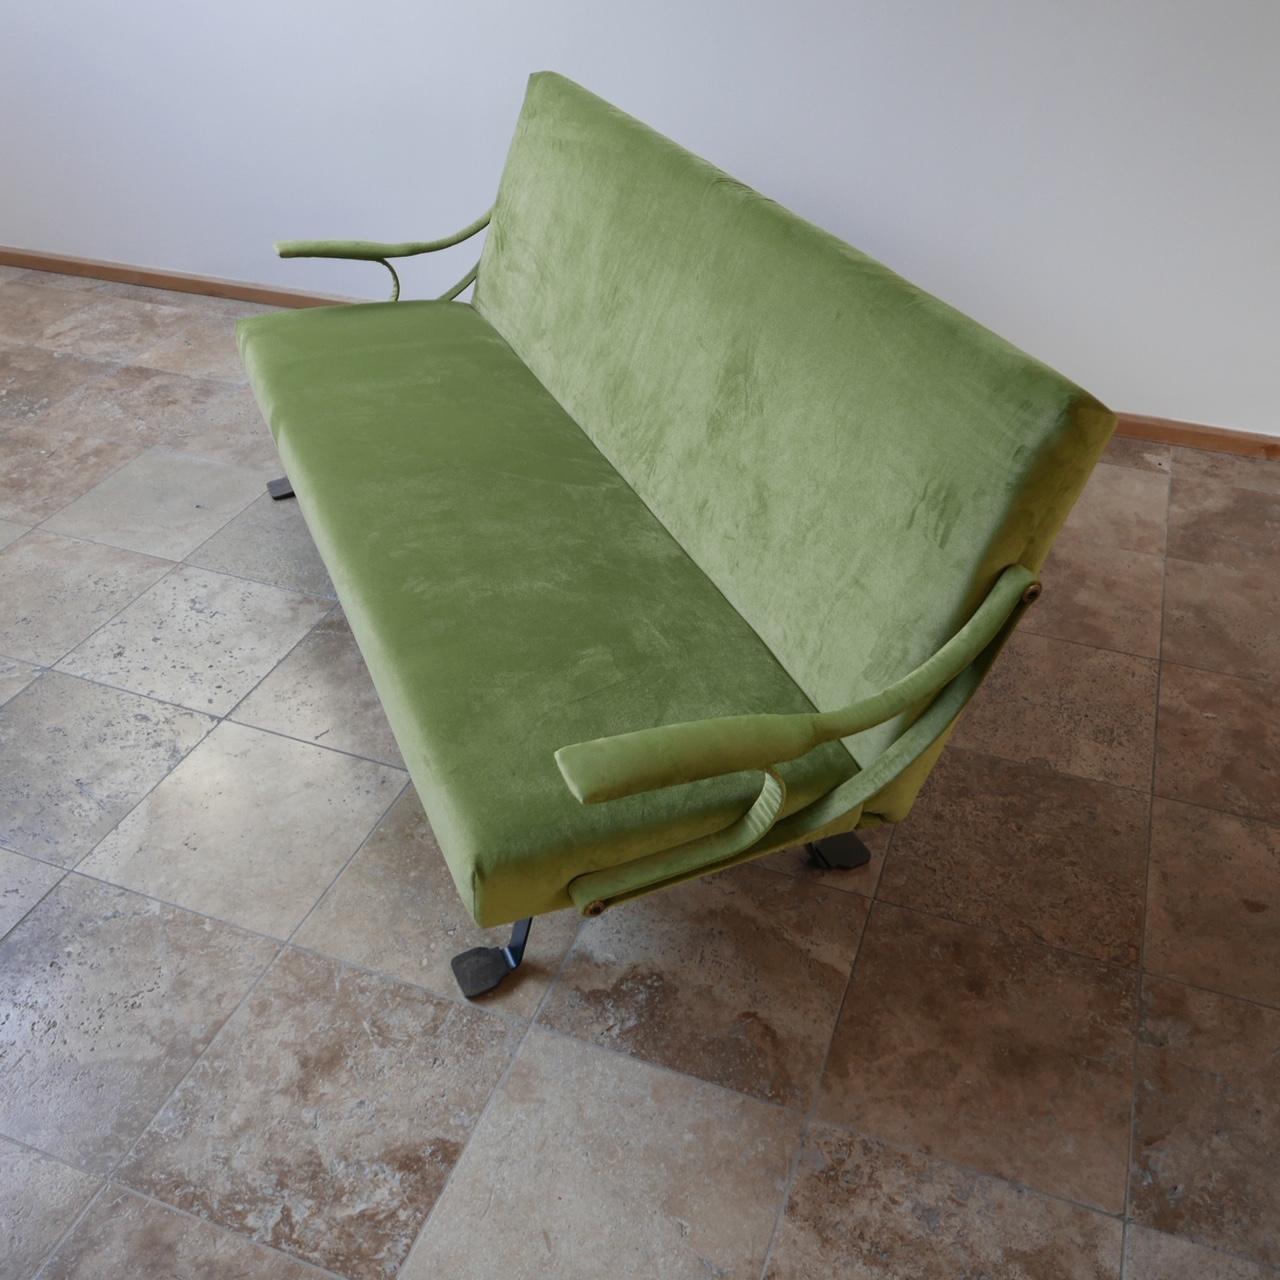 Ein seltenes Sofa des italienischen Designers Ignazio Gardella für Gavina. 

ca. 1957, Italien. 

Emaillierter Stahl und Messing.

Dieses seltene Sofa war bei Gavina nur auf Sonderbestellung als Variante zu den häufigeren Sesseln erhältlich